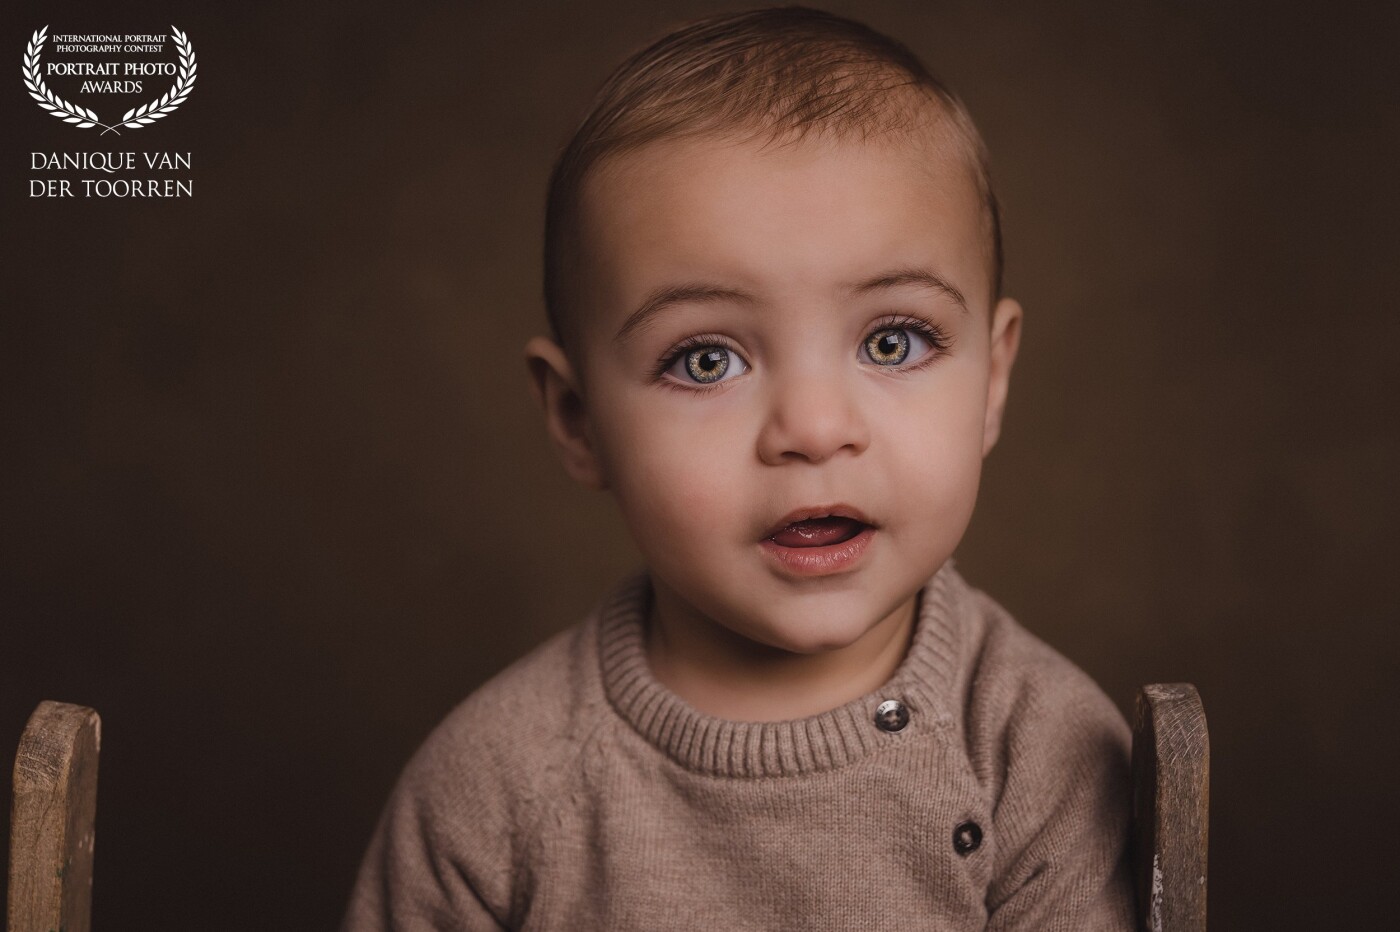 Beatiful little boy with big green eyes.<br />
<br />
Model: Zeyd<br />
Photo & Lightroom edit: @daniquevdtphotography